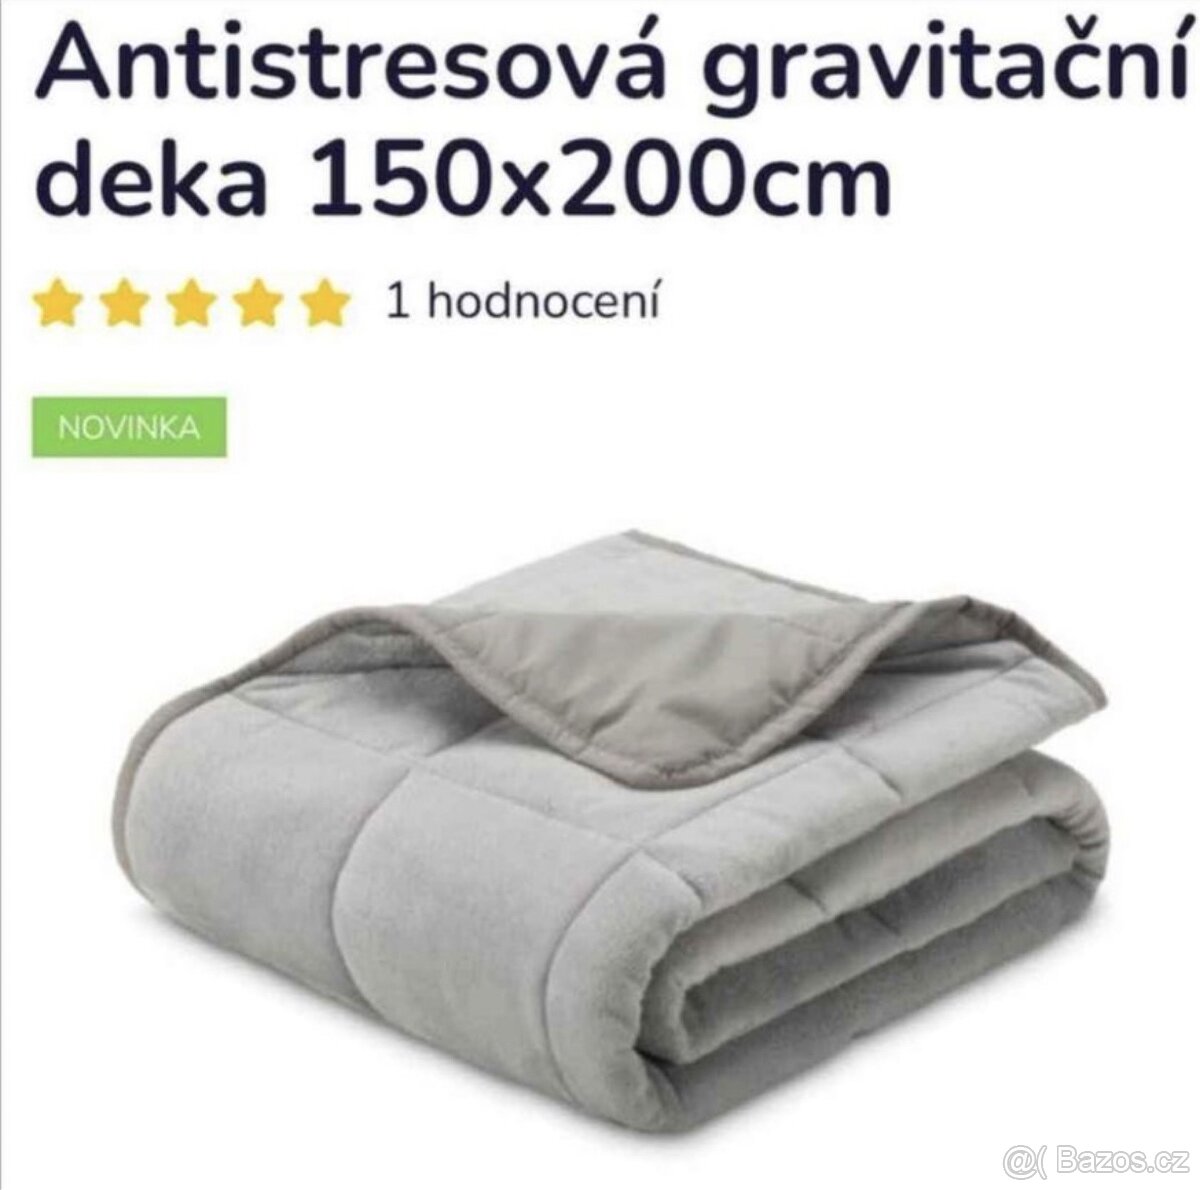 Nové antistresové gravitační deky 6kg